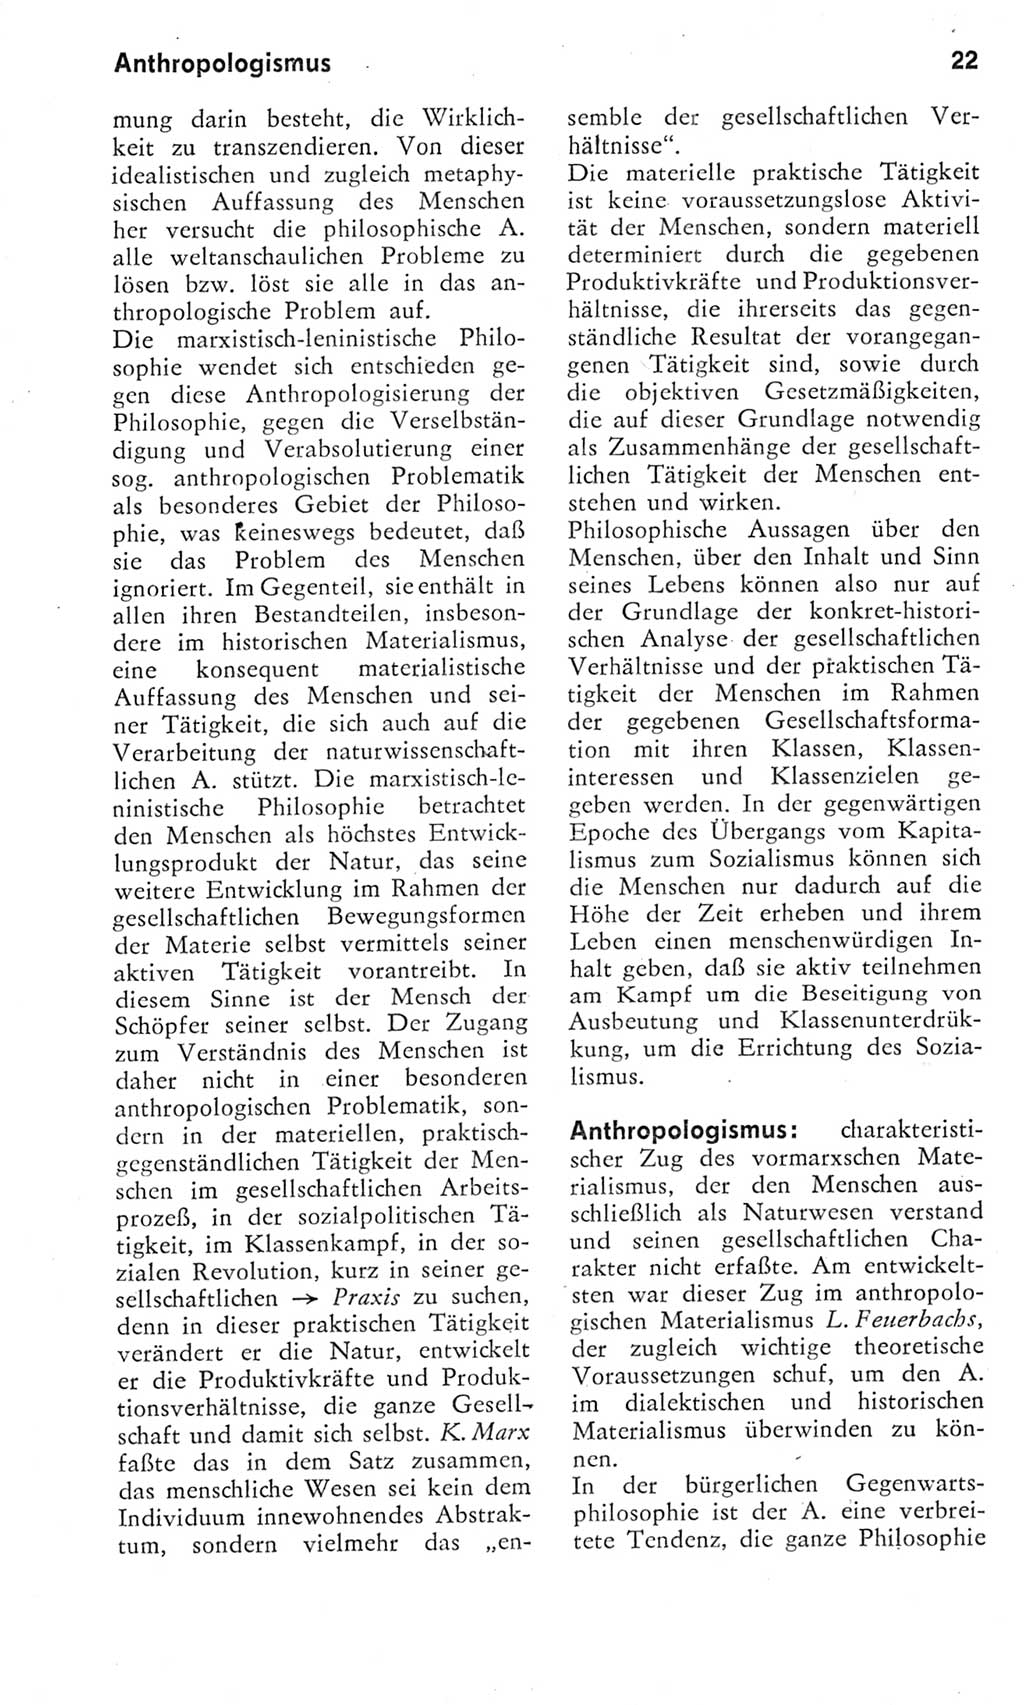 Kleines Wörterbuch der marxistisch-leninistischen Philosophie [Deutsche Demokratische Republik (DDR)] 1975, Seite 22 (Kl. Wb. ML Phil. DDR 1975, S. 22)